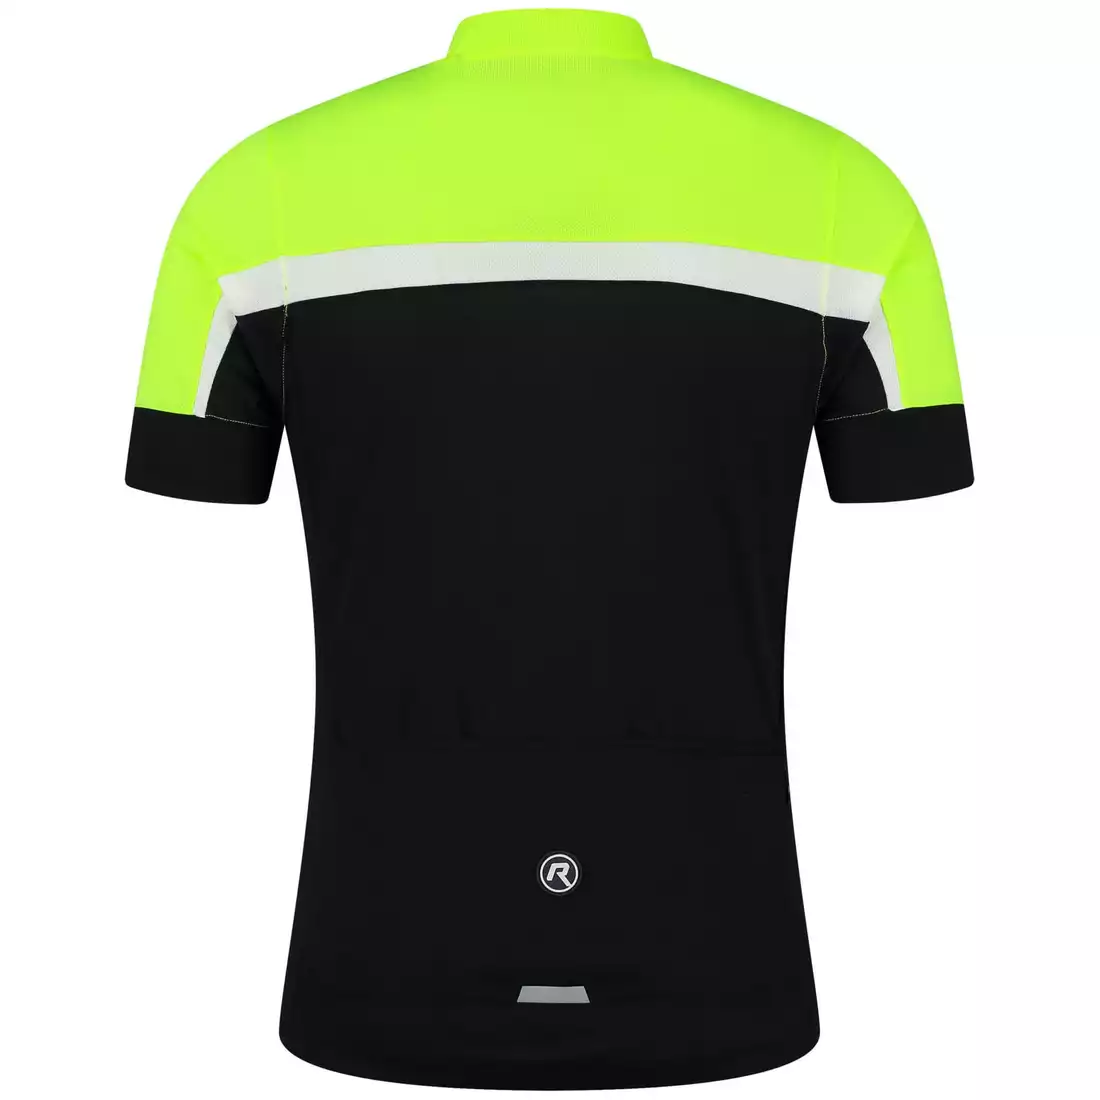 Rogelli COURSE pánský cyklistický dres, Černá a žlutá